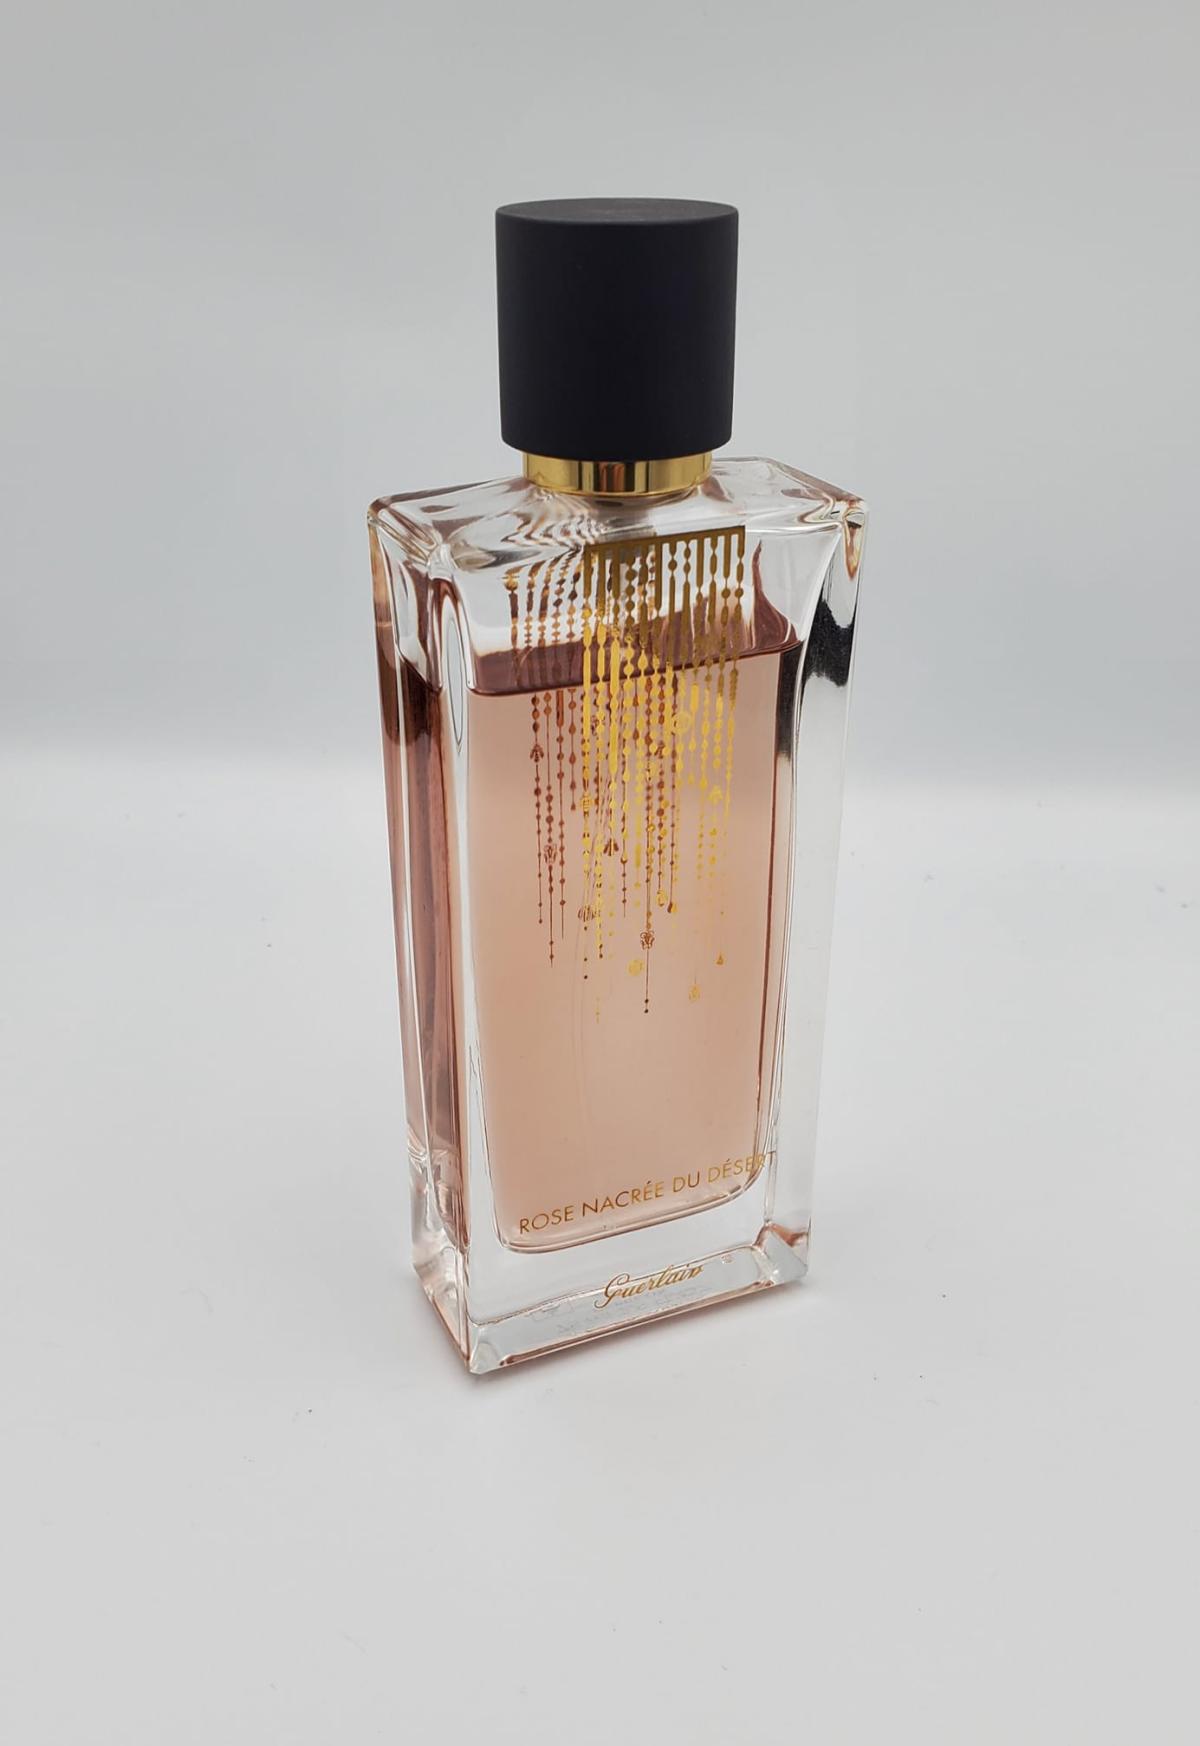 Rose Nacree du Desert Guerlain perfume - a fragrance for women and men 2012